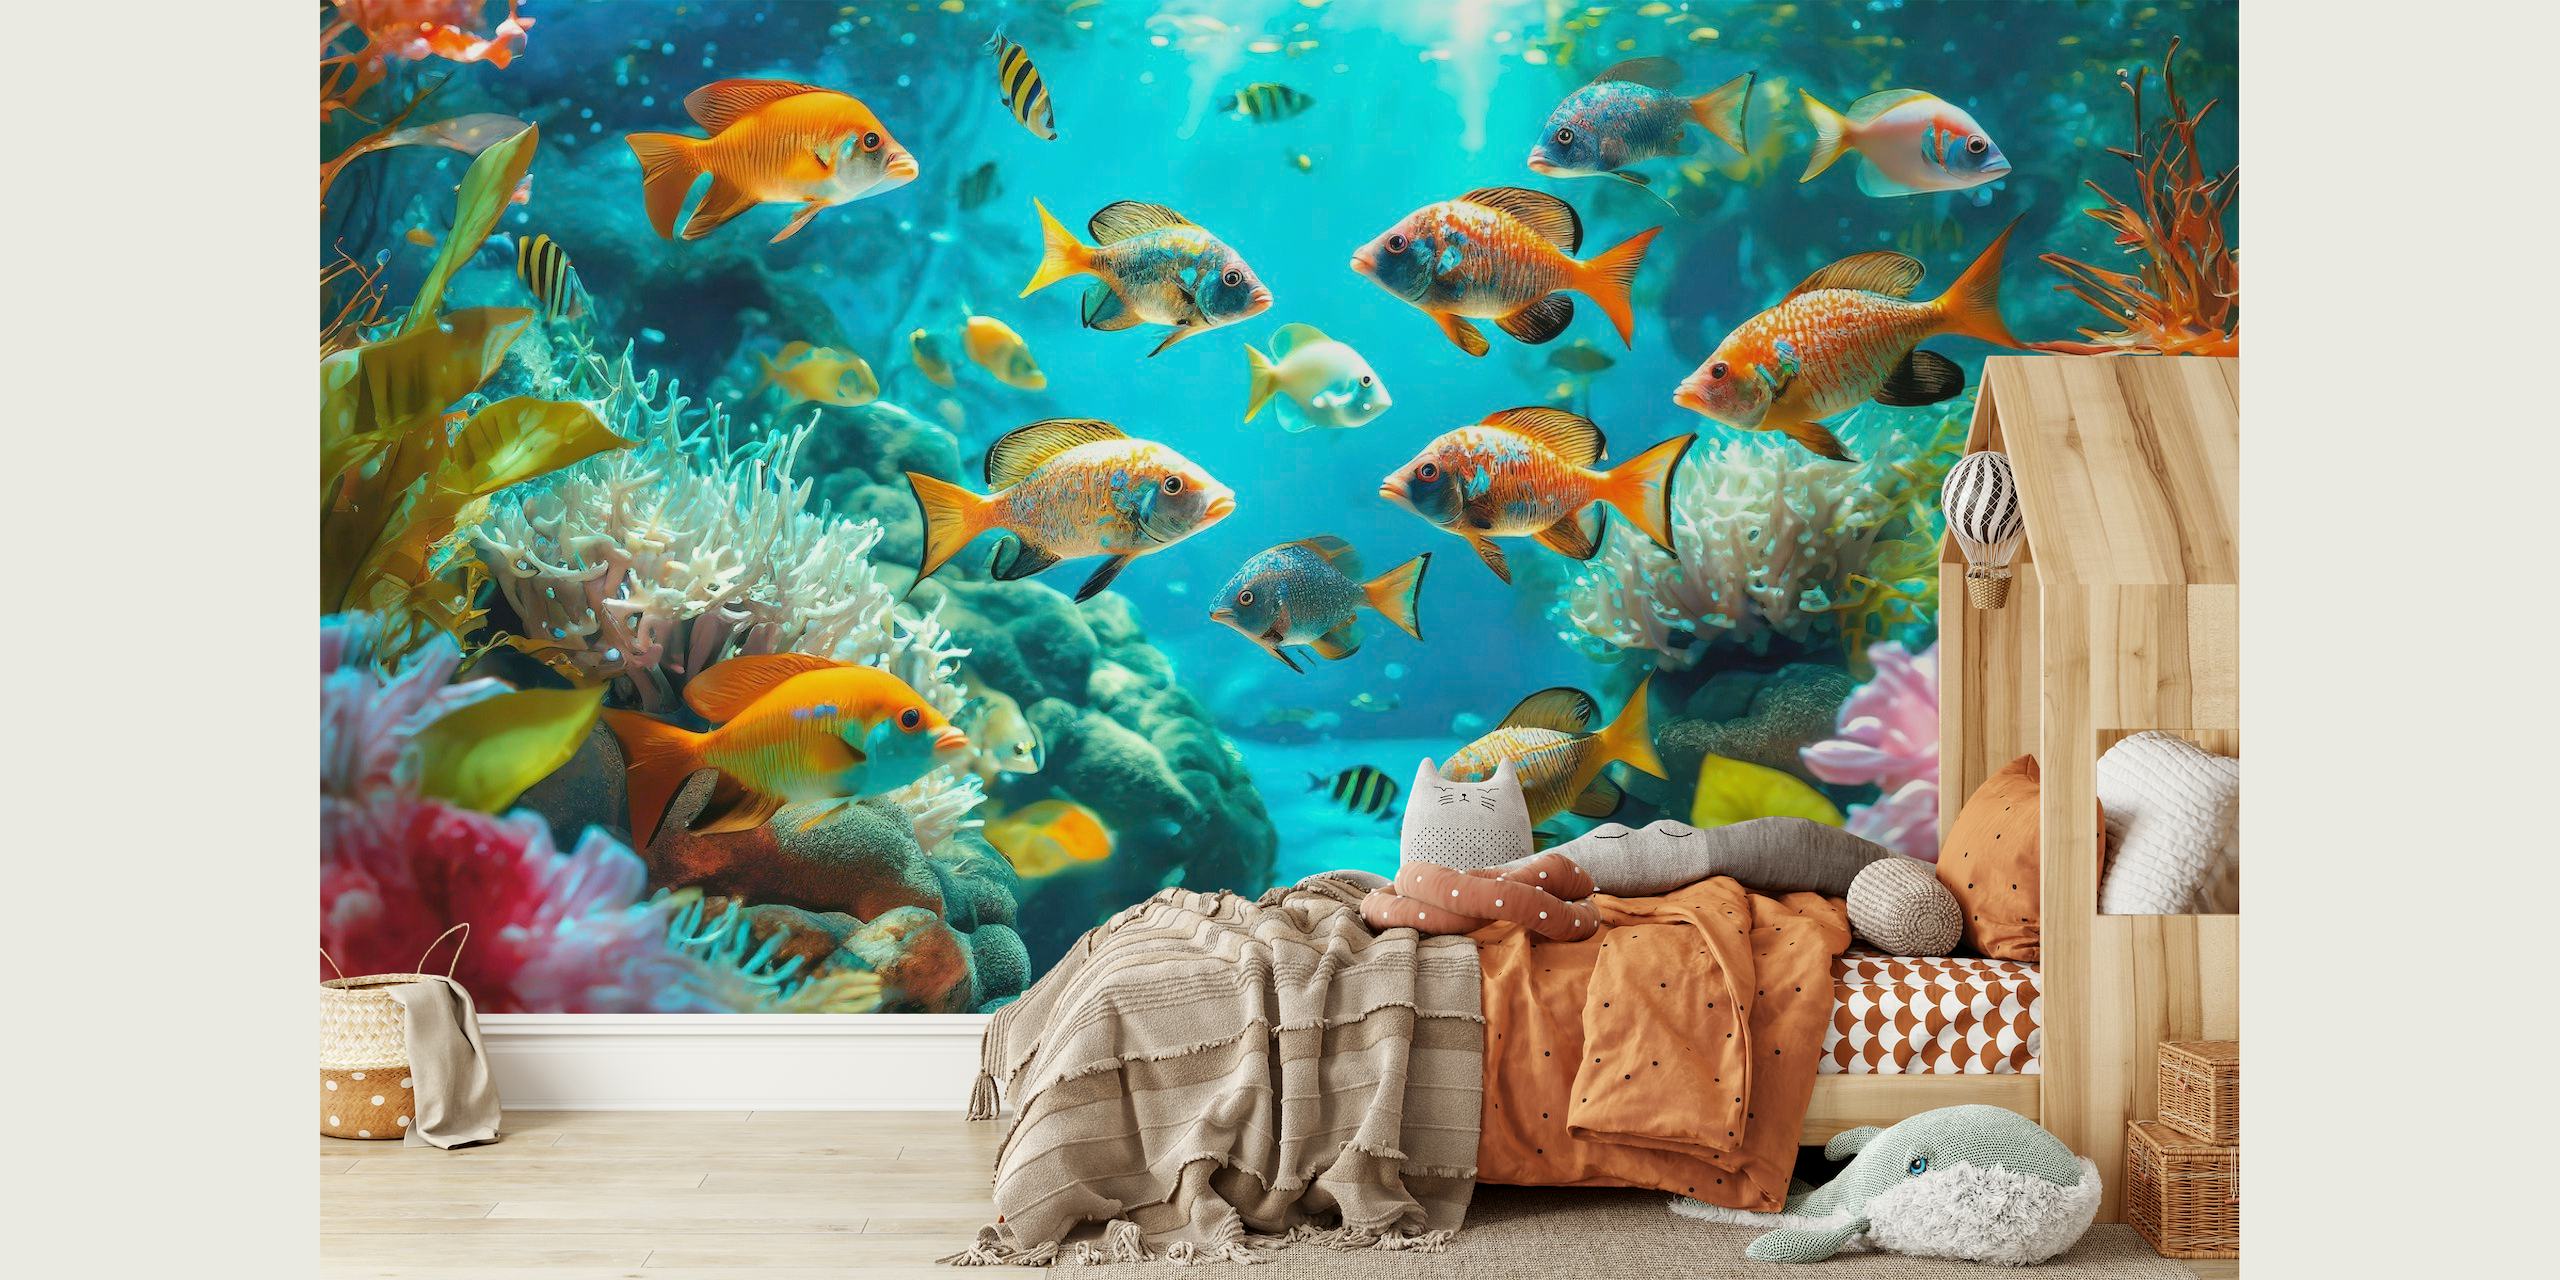 Živahni podvodni zidni mural koji prikazuje šarene ribe koje plivaju među koraljima